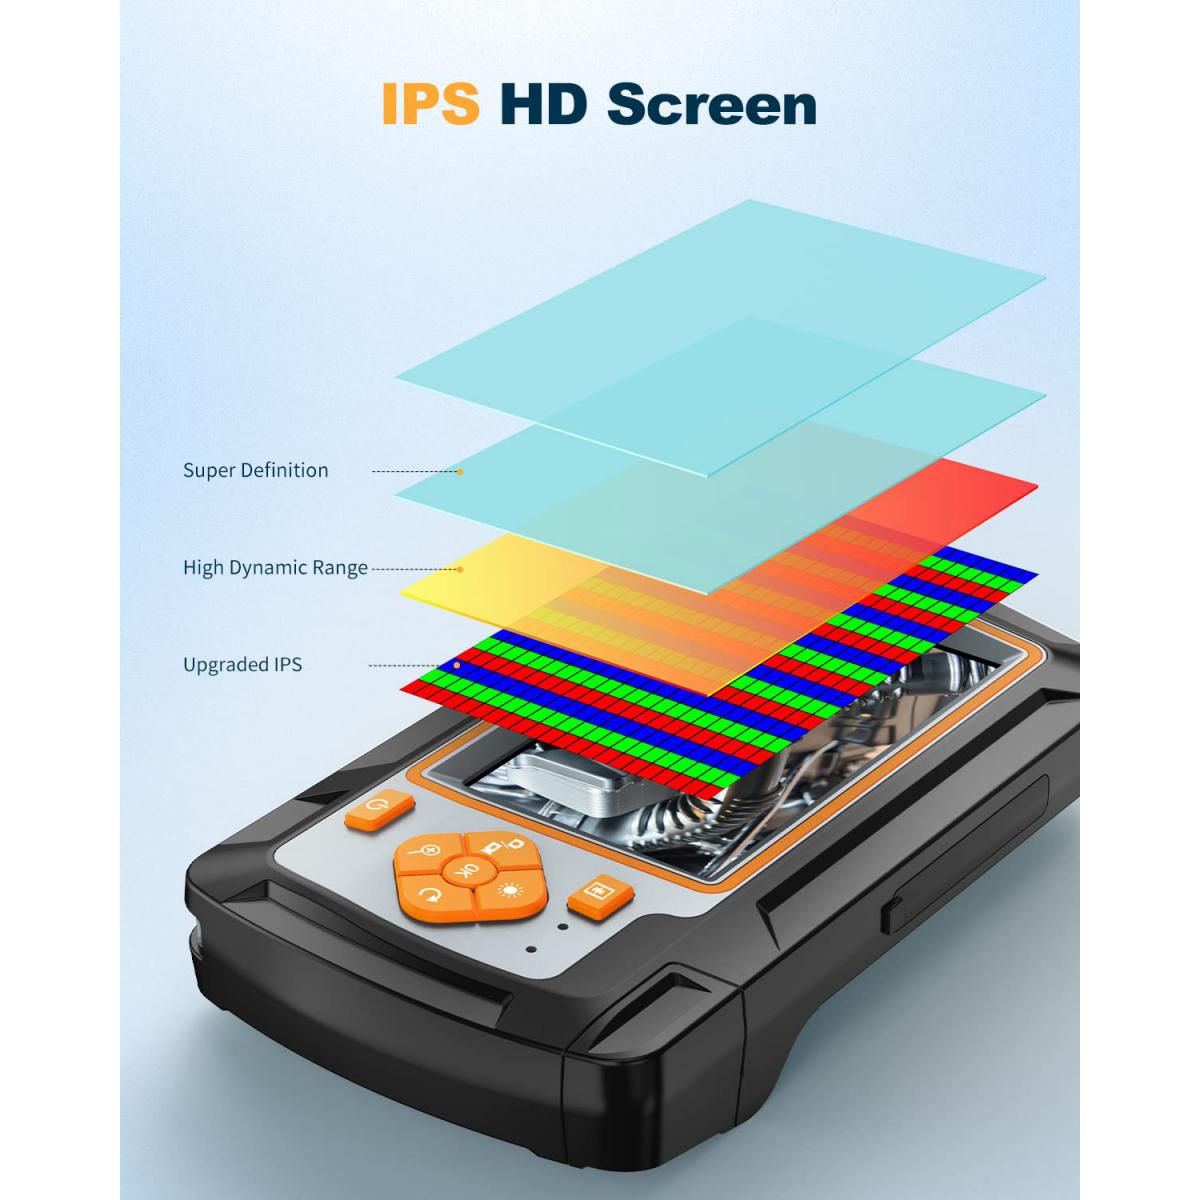 内視鏡、デュアルレンズ検査カメラ、1080P HDボアスコープ、5.5mm 32.8ft/10m金属ケーブル、4.3'IPSハードスクリーン -  KF Concept